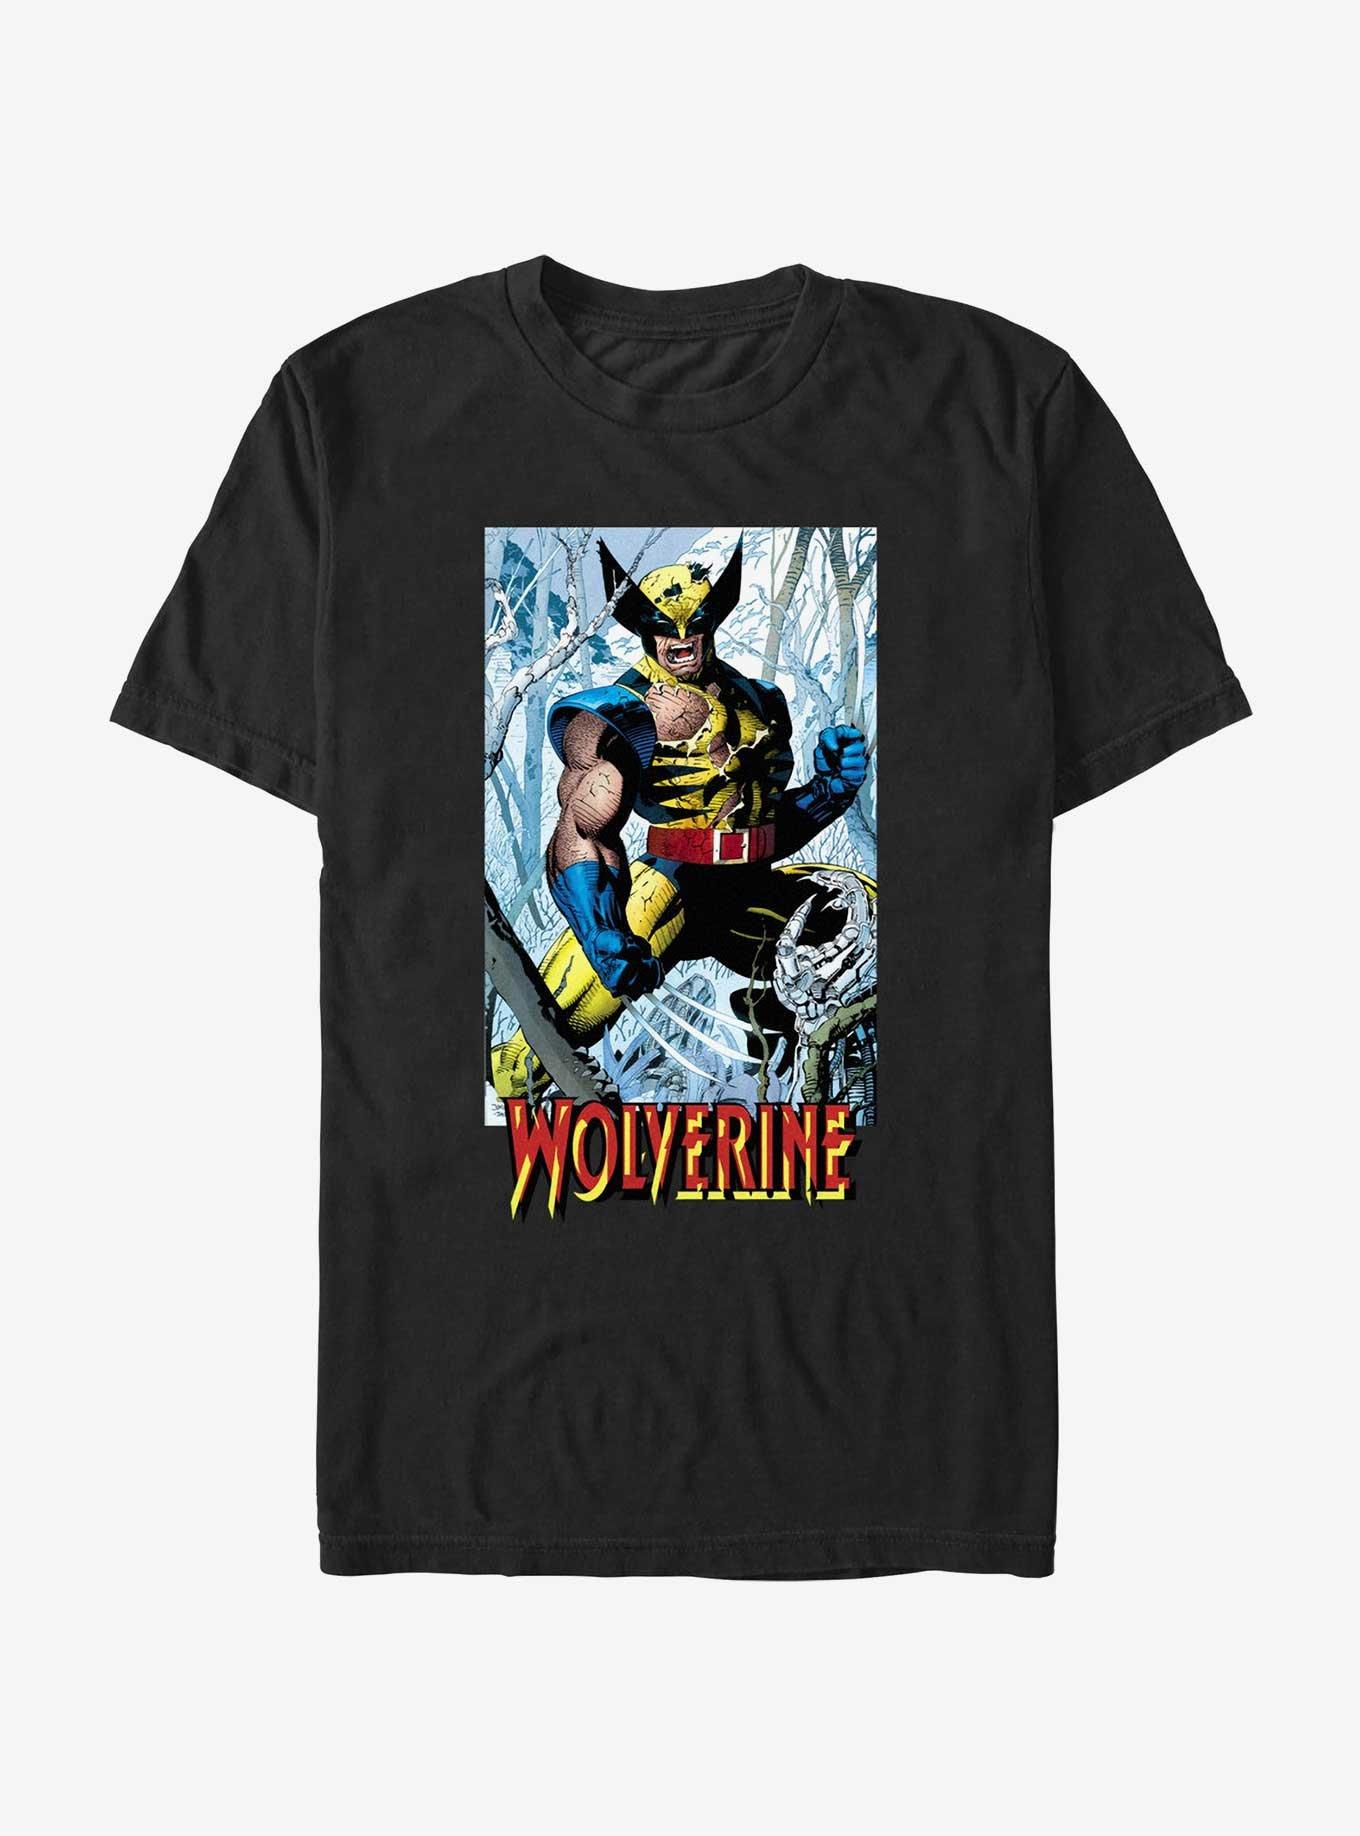 Wolverine Discipline 22 From Then Til Now Trading Card T-Shirt, BLACK, hi-res